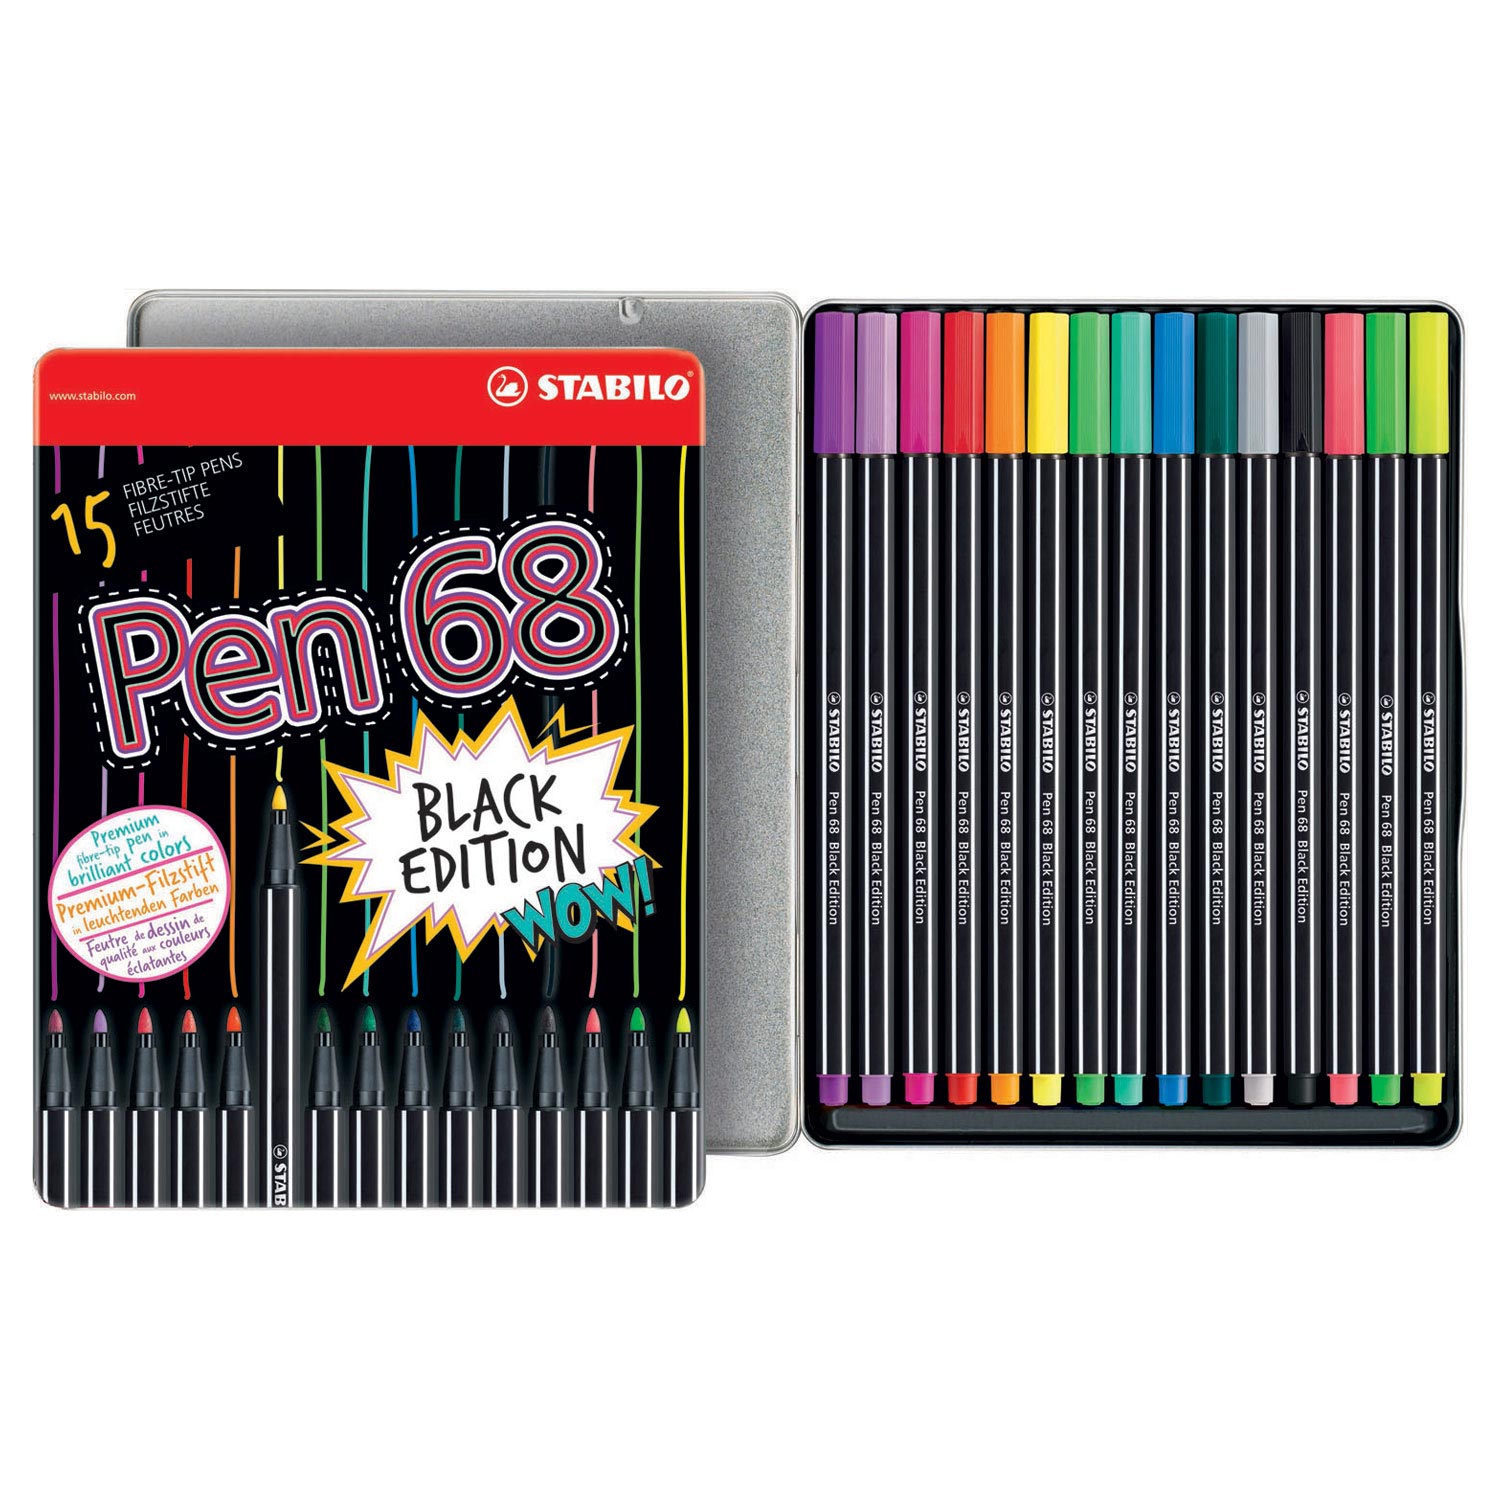 stabilo Pen 68 black - buy now on